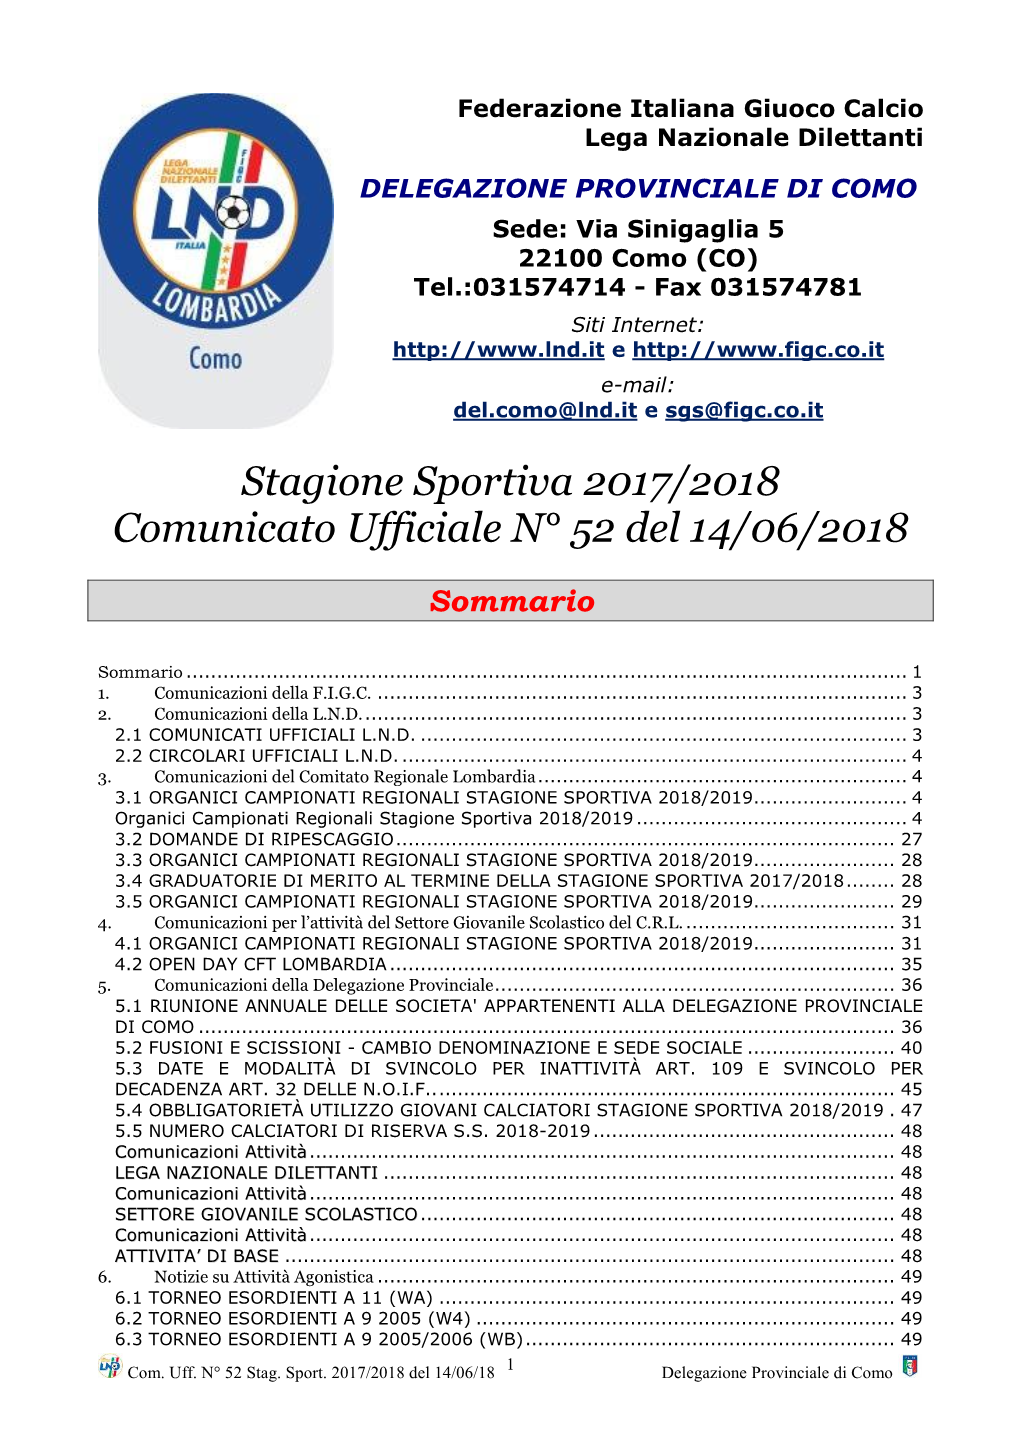 Stagione Sportiva 2017/2018 Comunicato Ufficiale N° 52 Del 14/06/2018